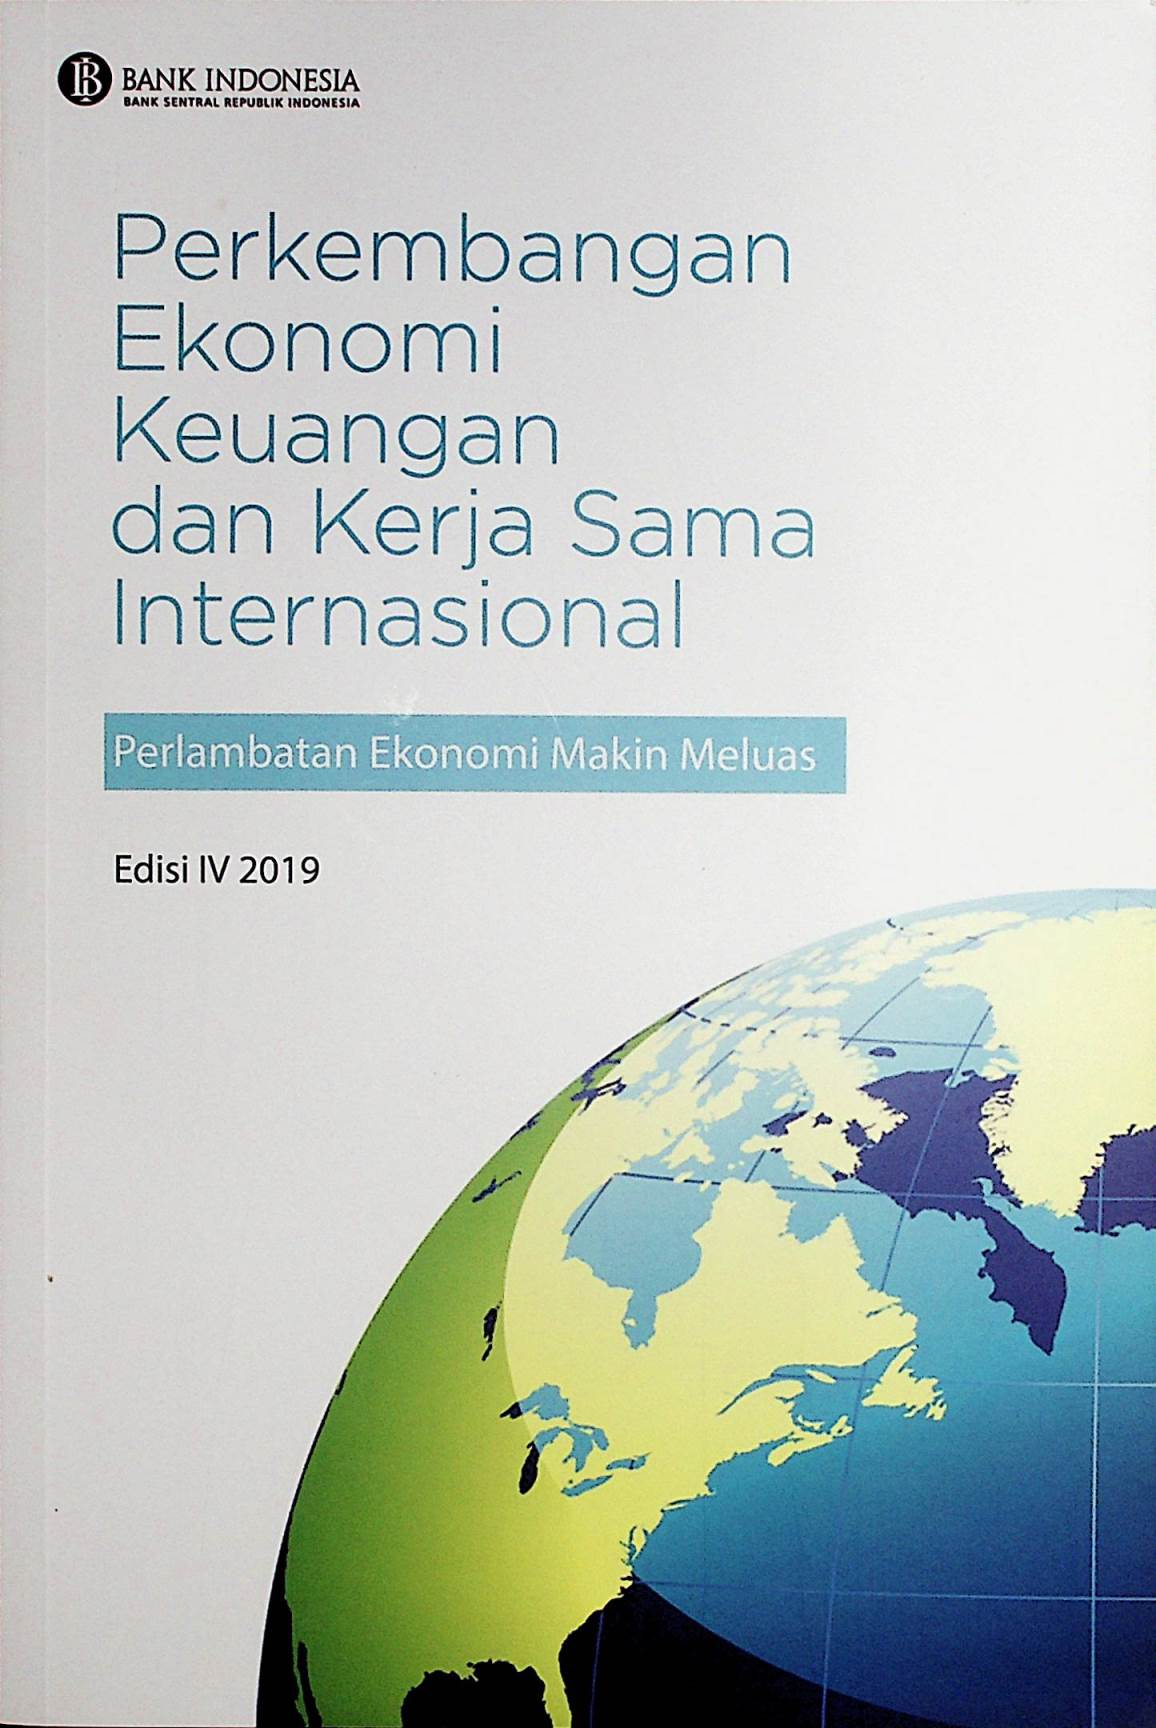 Perkembangan Ekonomi Keuangan dan Kerja Sama Internasional : Perlambatan Ekonomi Makin Meluas